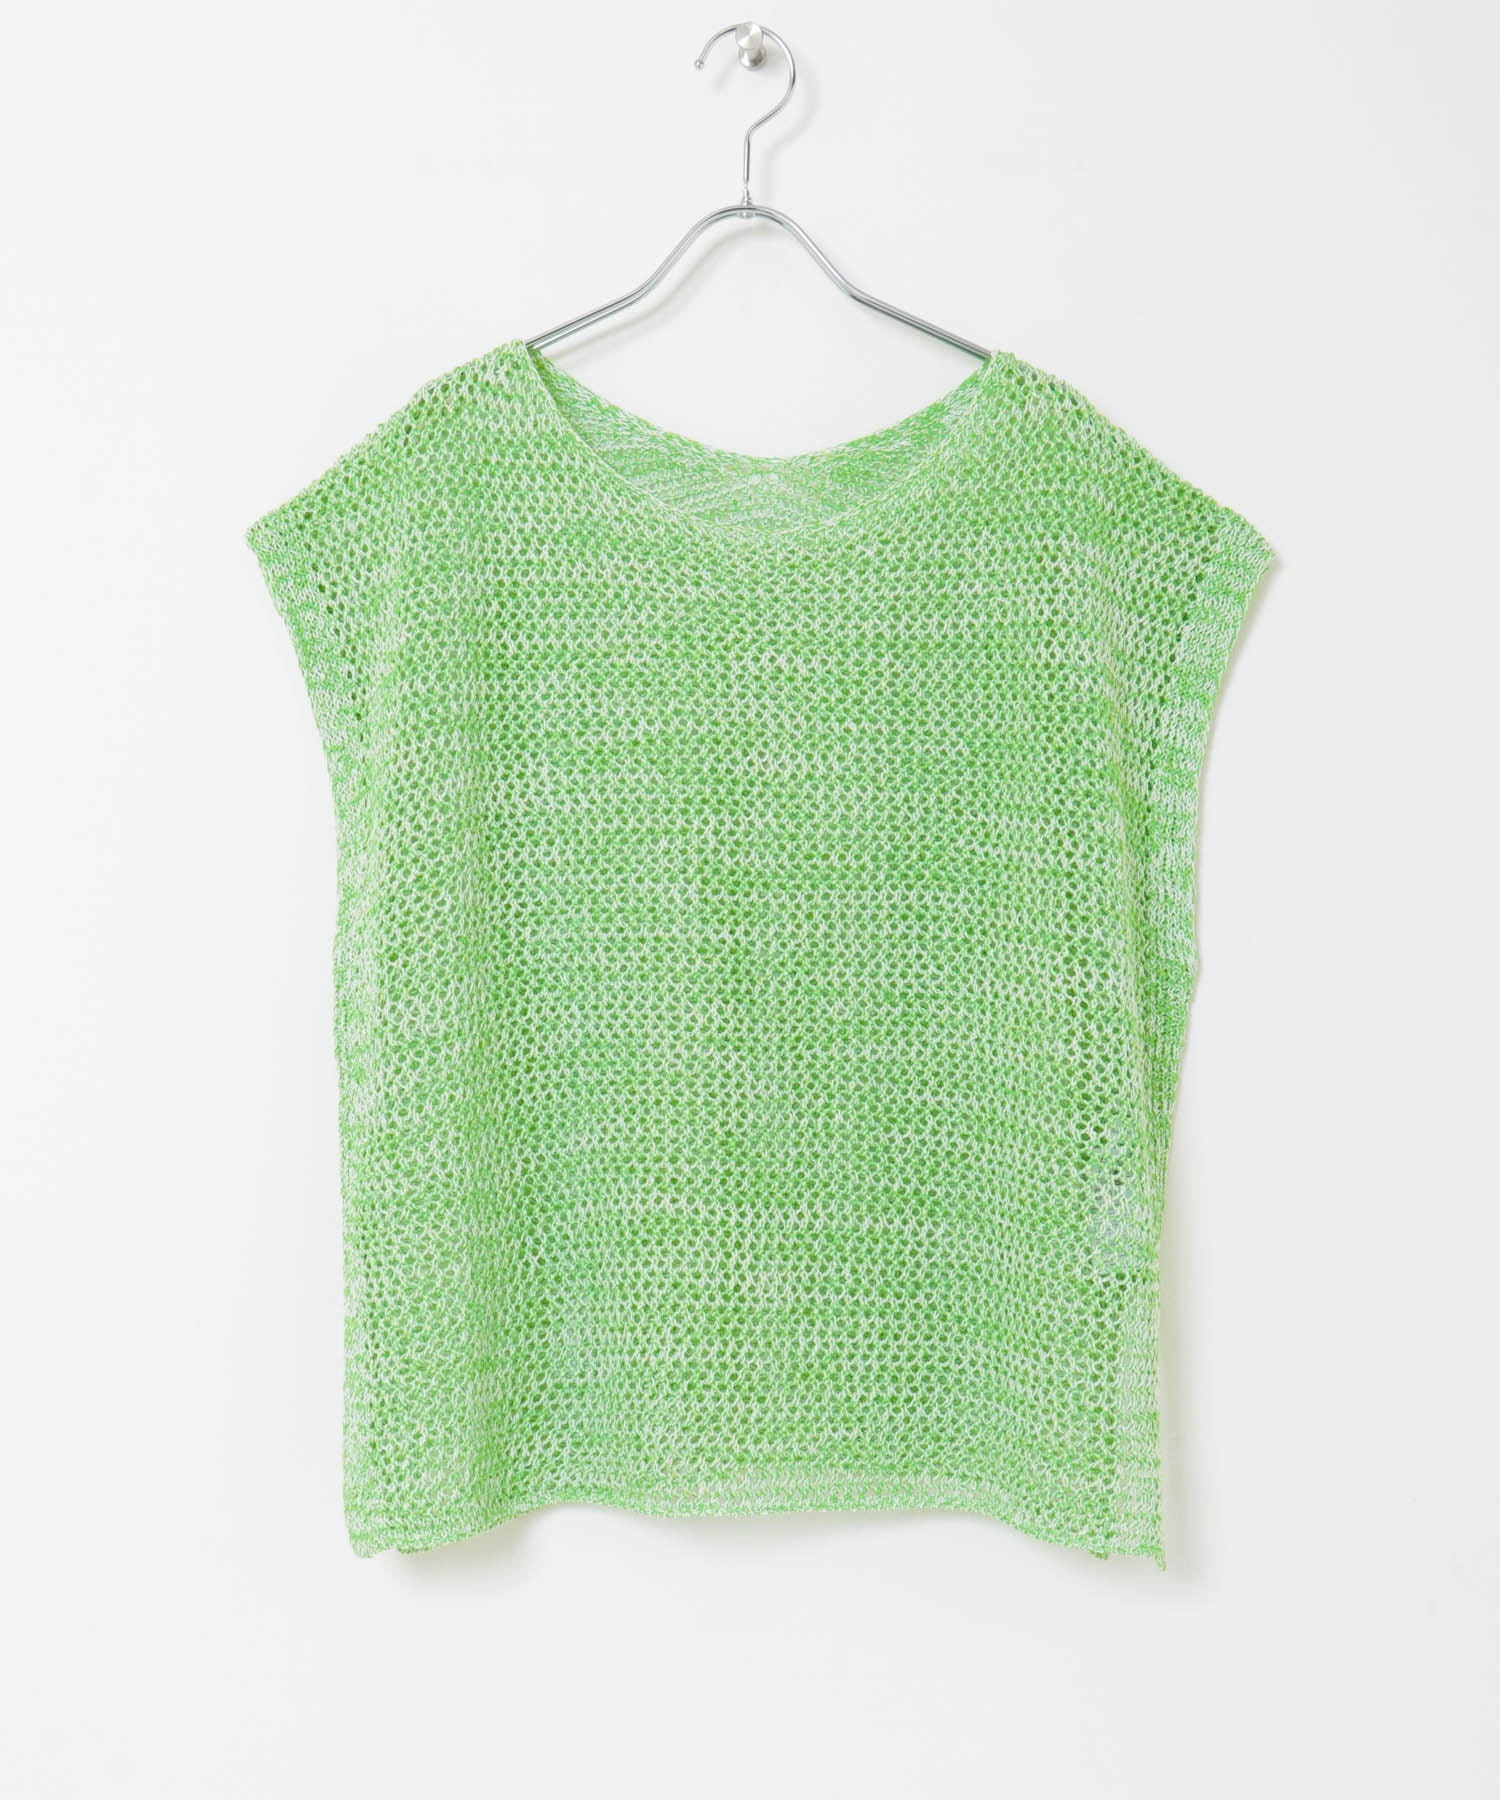 混色紗網狀針織衫(綠色-FREE-GREEN)